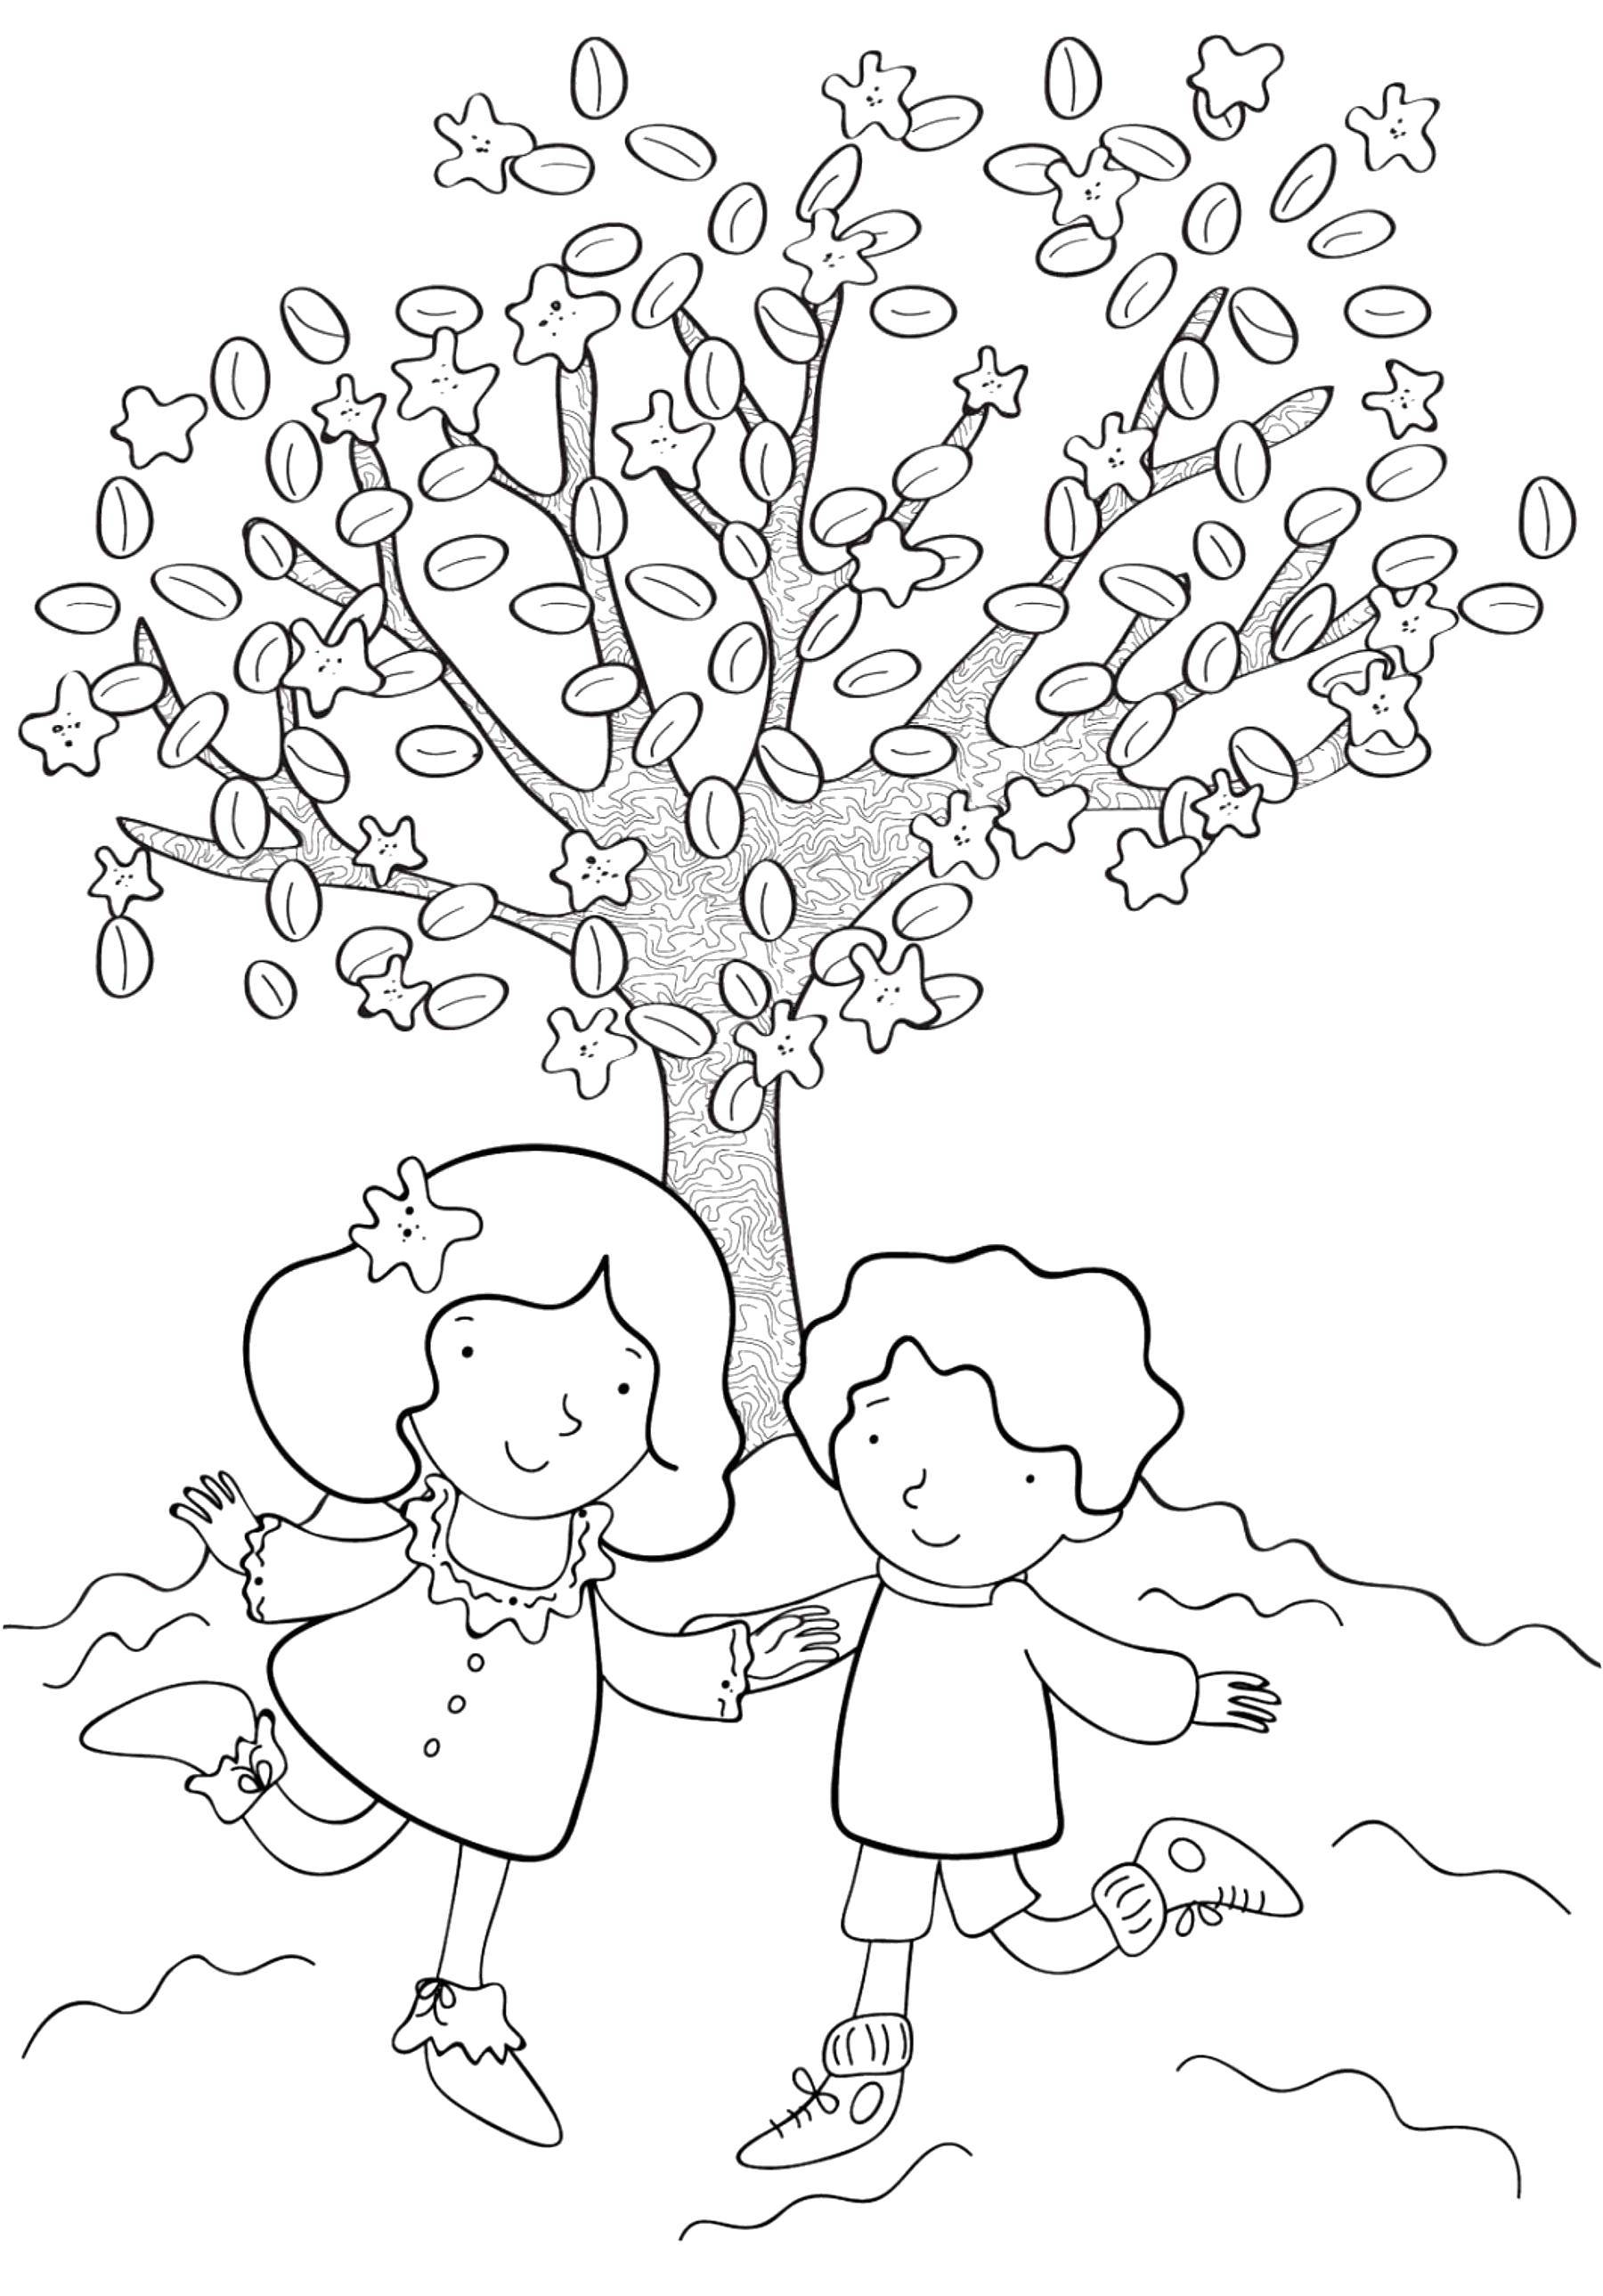 Опис: розмальовки  Діти гуляють підлогу деревом. Категорія: відпочинок. Теги:  Діти, ігри, відпочинок, природа.